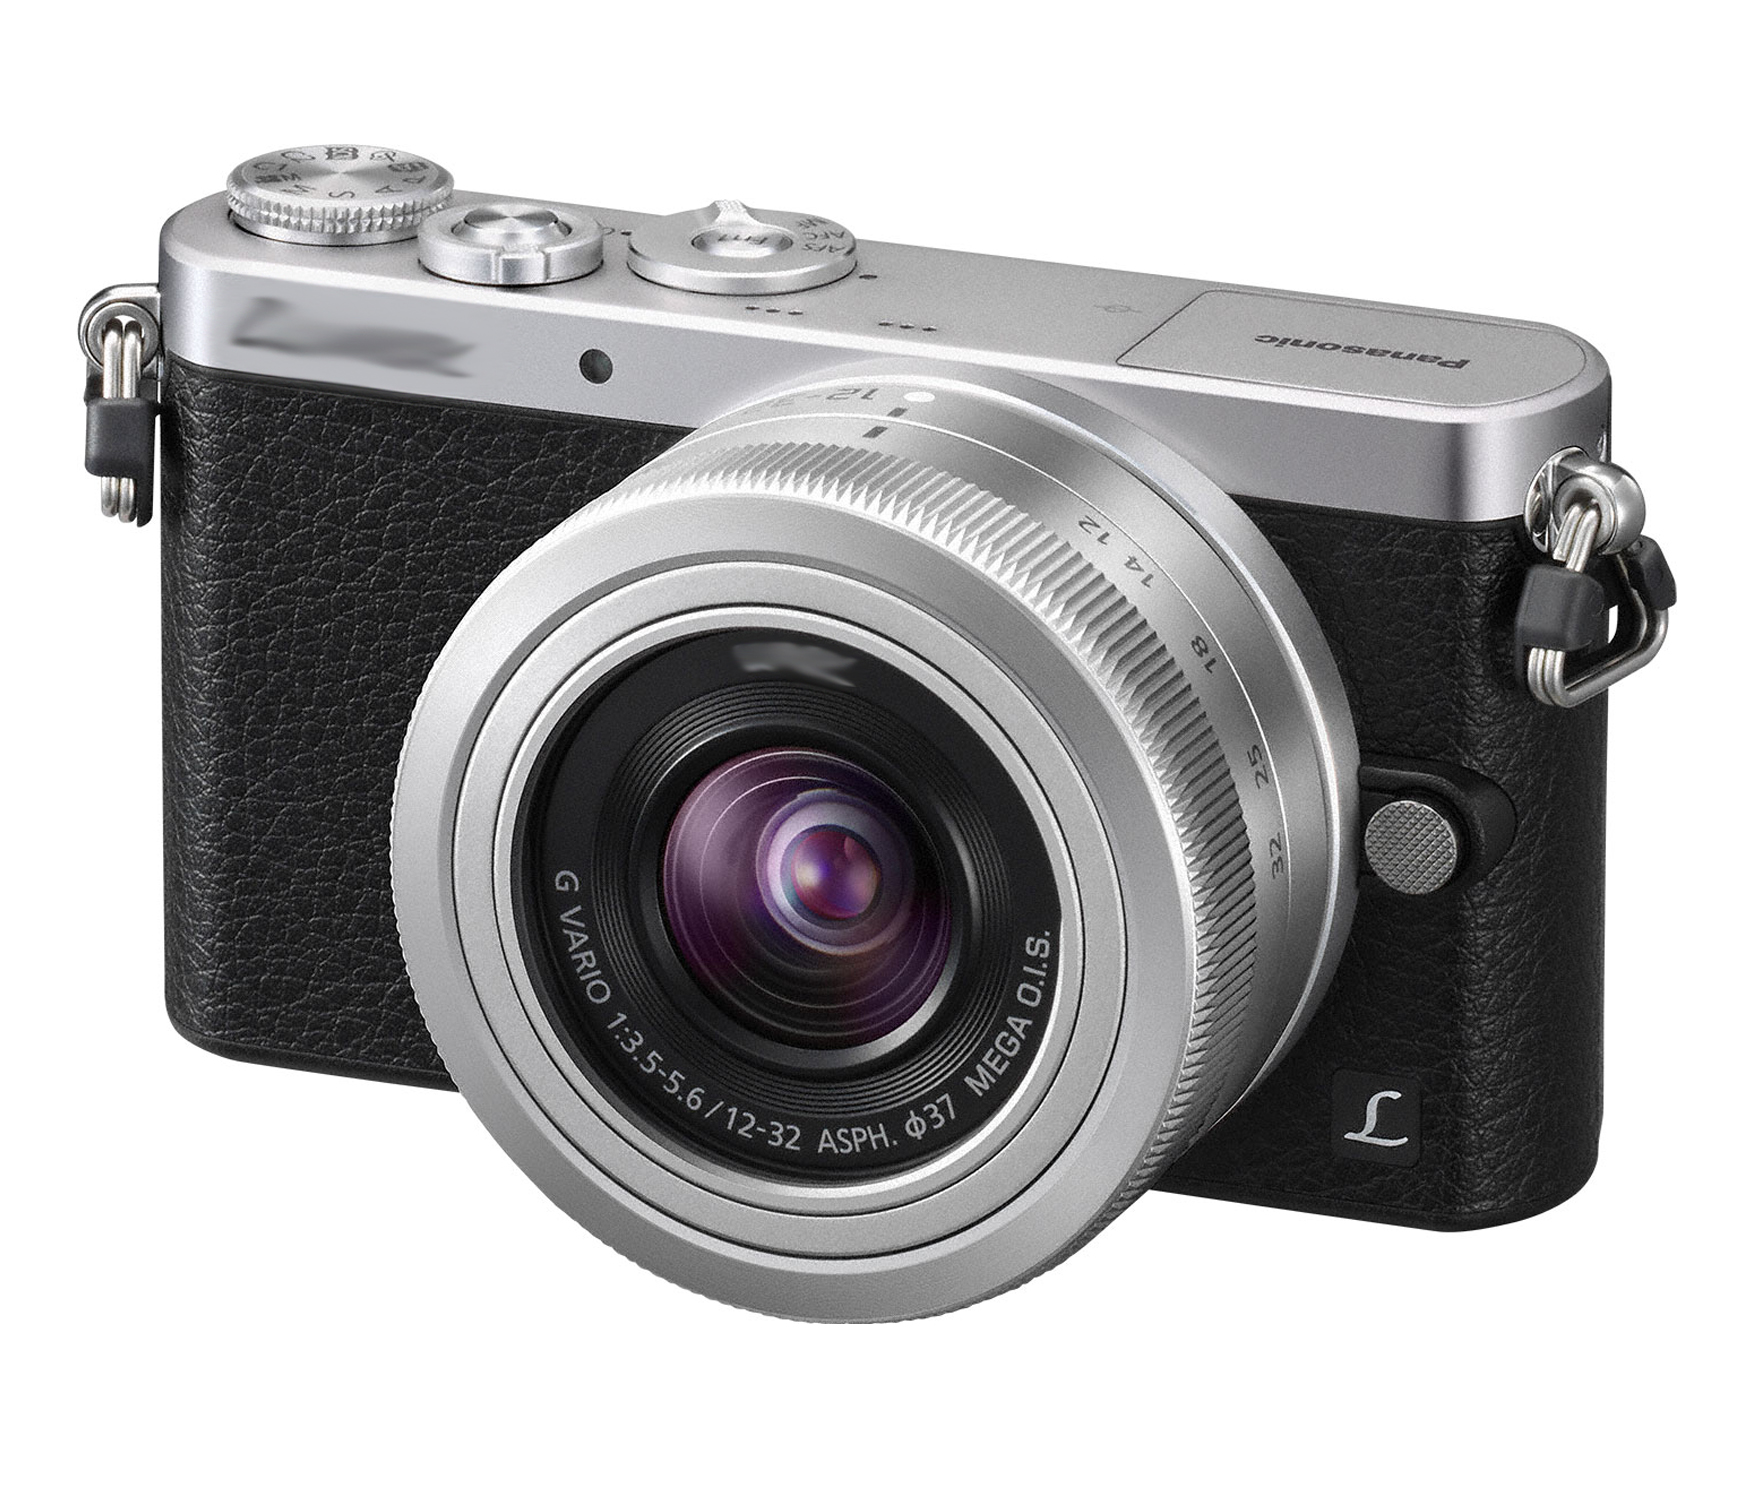 Quel appareil photo choisir : Compact, Reflex, Hybride, Bridge ?